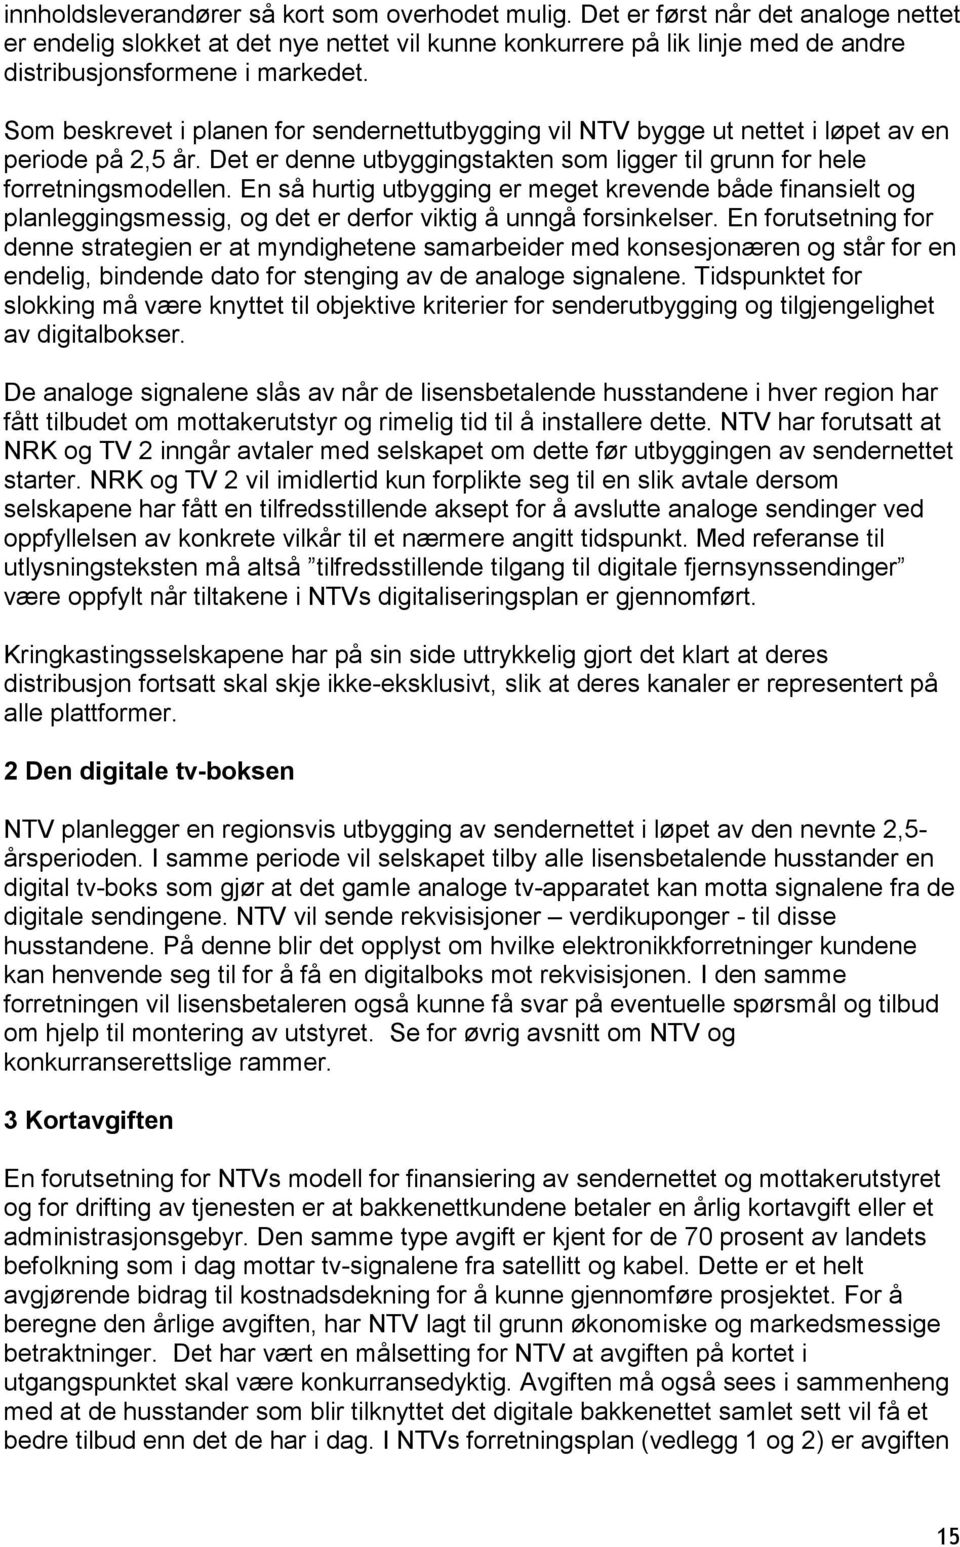 Som beskrevet i planen for sendernettutbygging vil NTV bygge ut nettet i løpet av en periode på 2,5 år. Det er denne utbyggingstakten som ligger til grunn for hele forretningsmodellen.